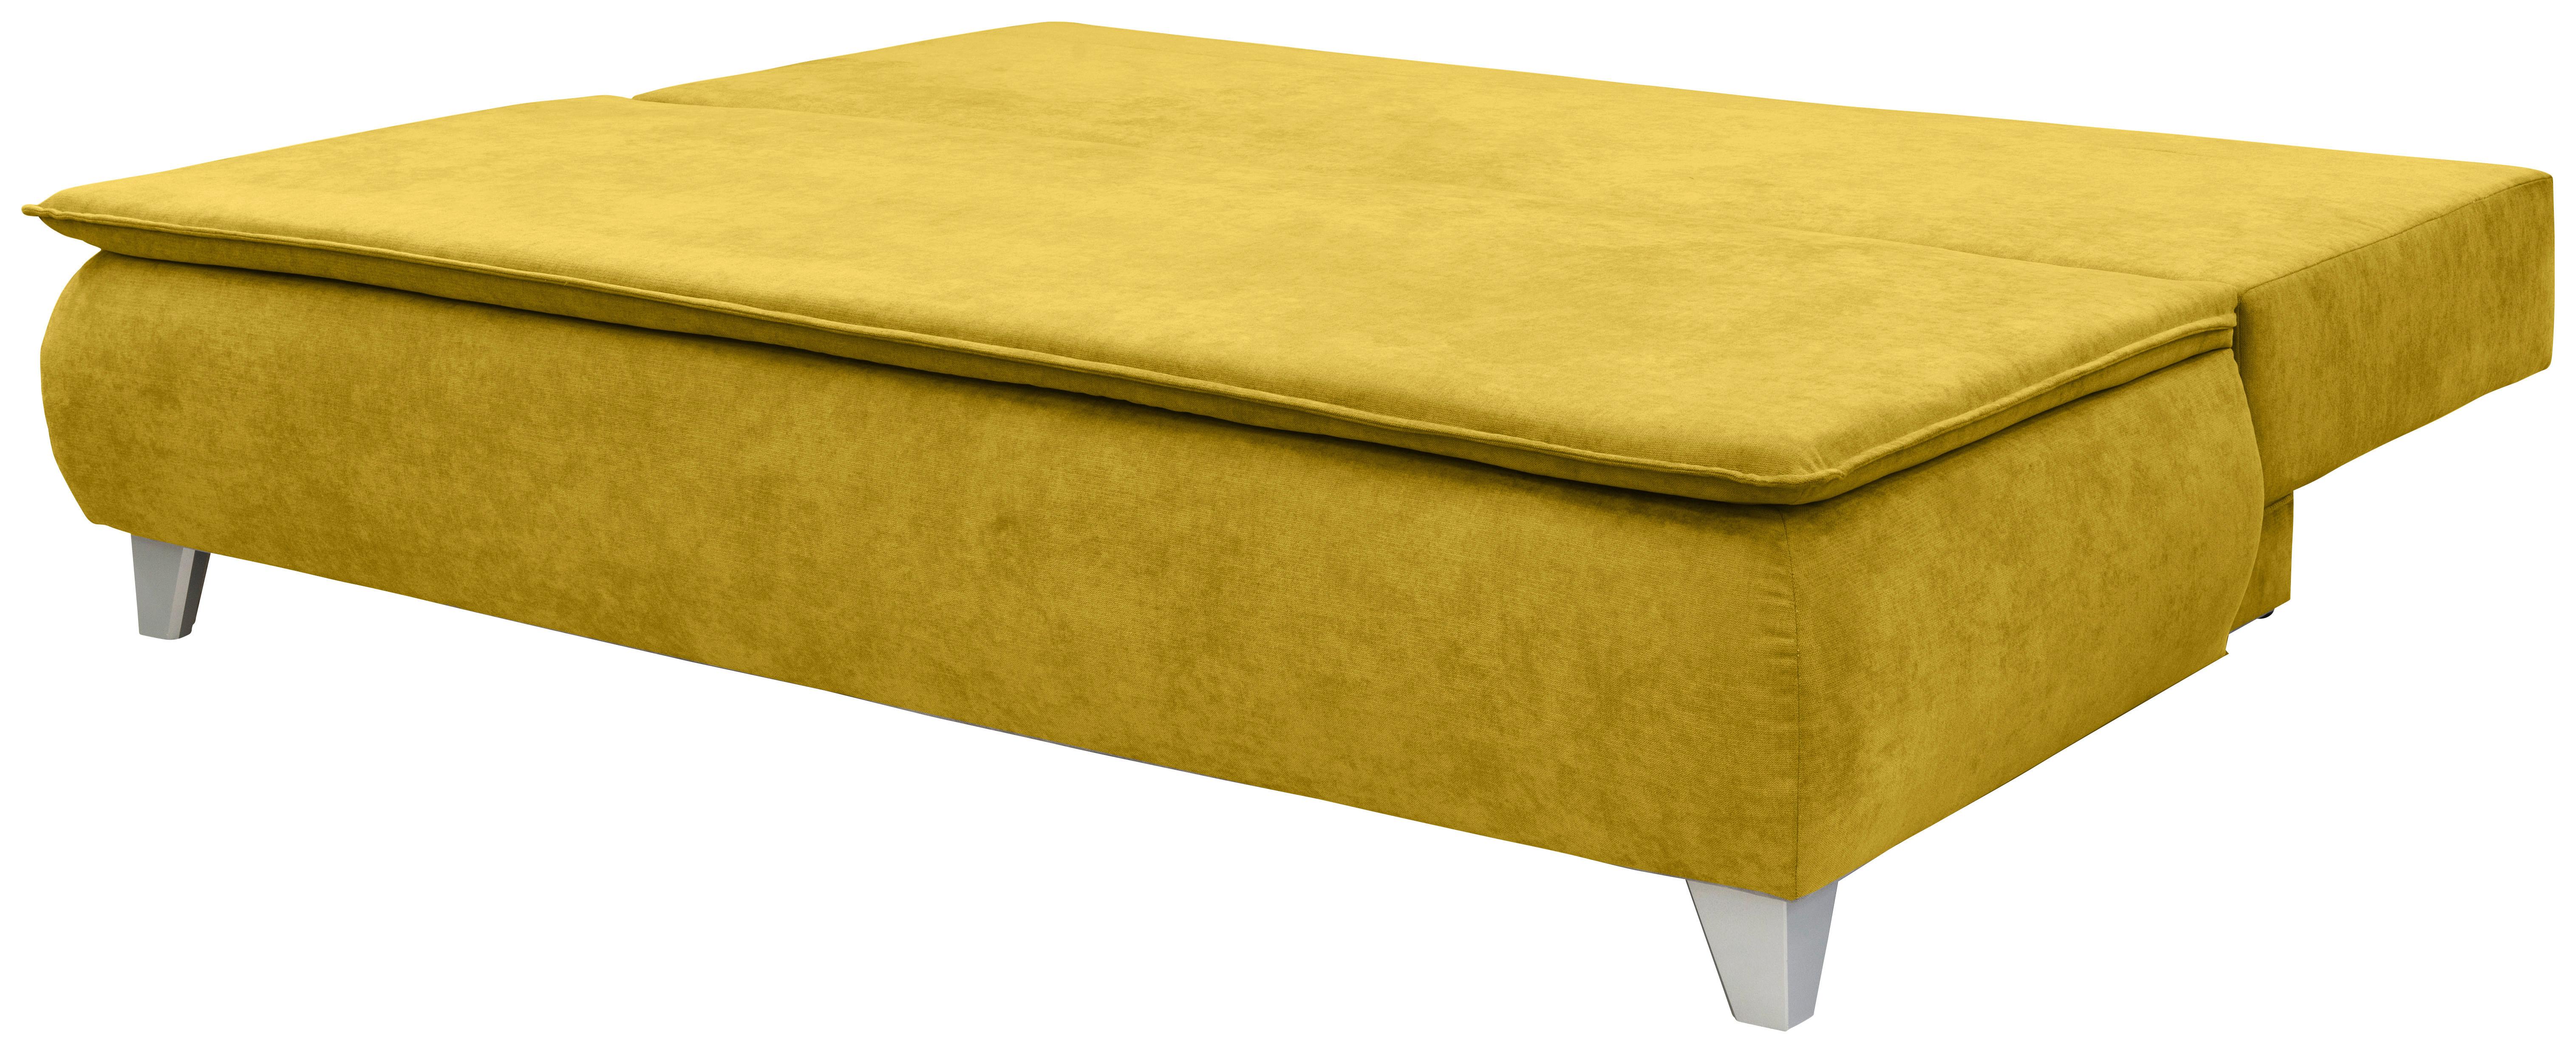 Boxspringová Pohovka Mona, Žlutá - žlutá, Moderní, textil (208/100/106cm)